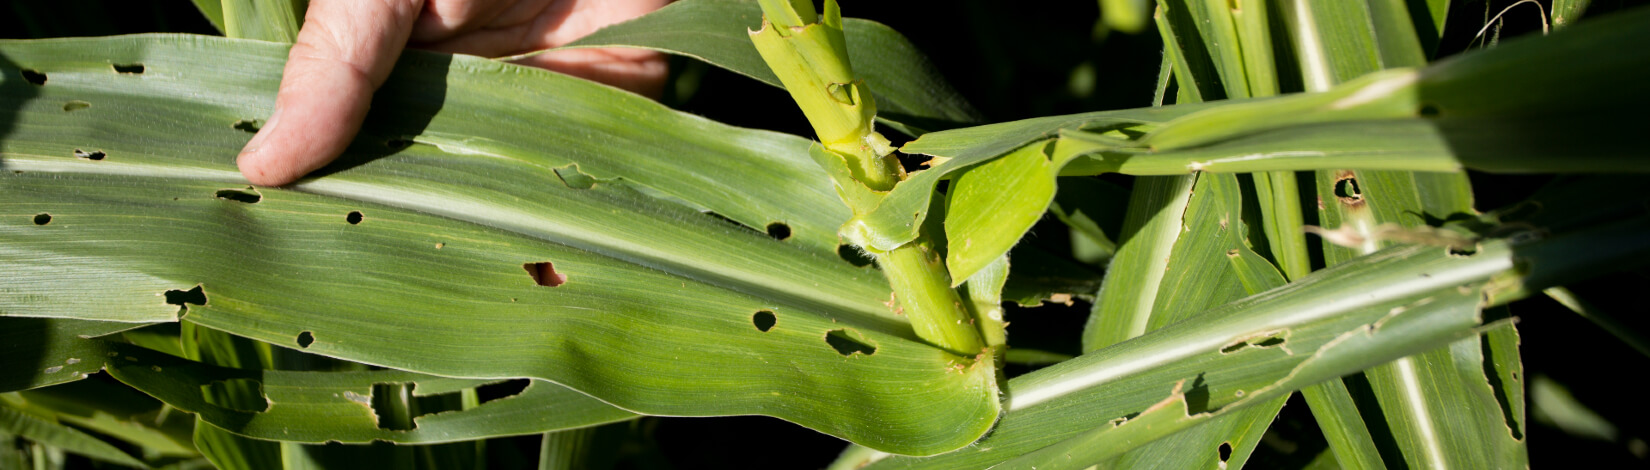 Pest damaged corn crop